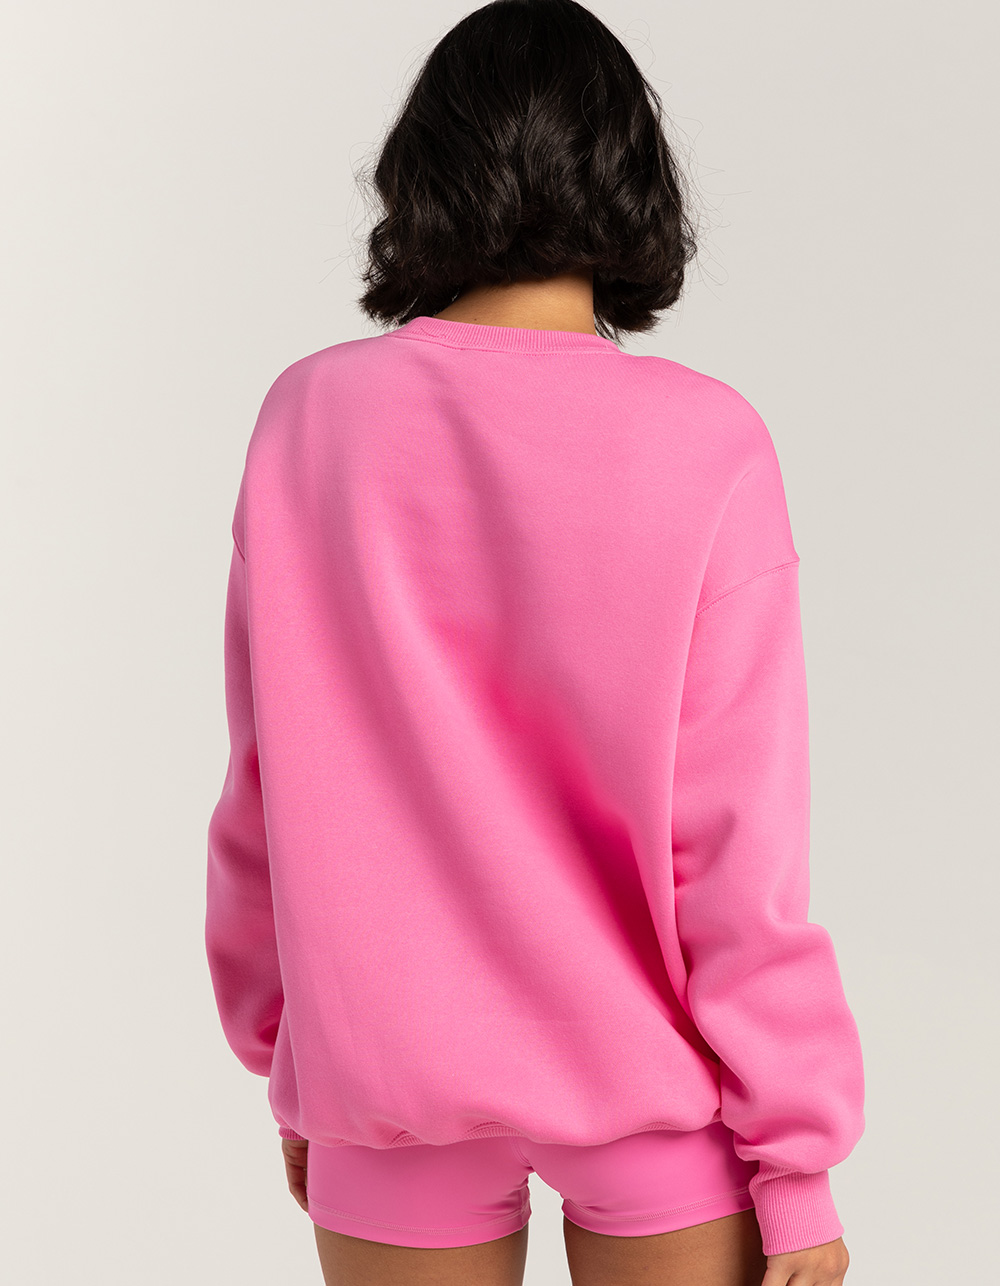 NIKE Sportswear Womens Oversized Crewneck Sweatshirt - POP PINK